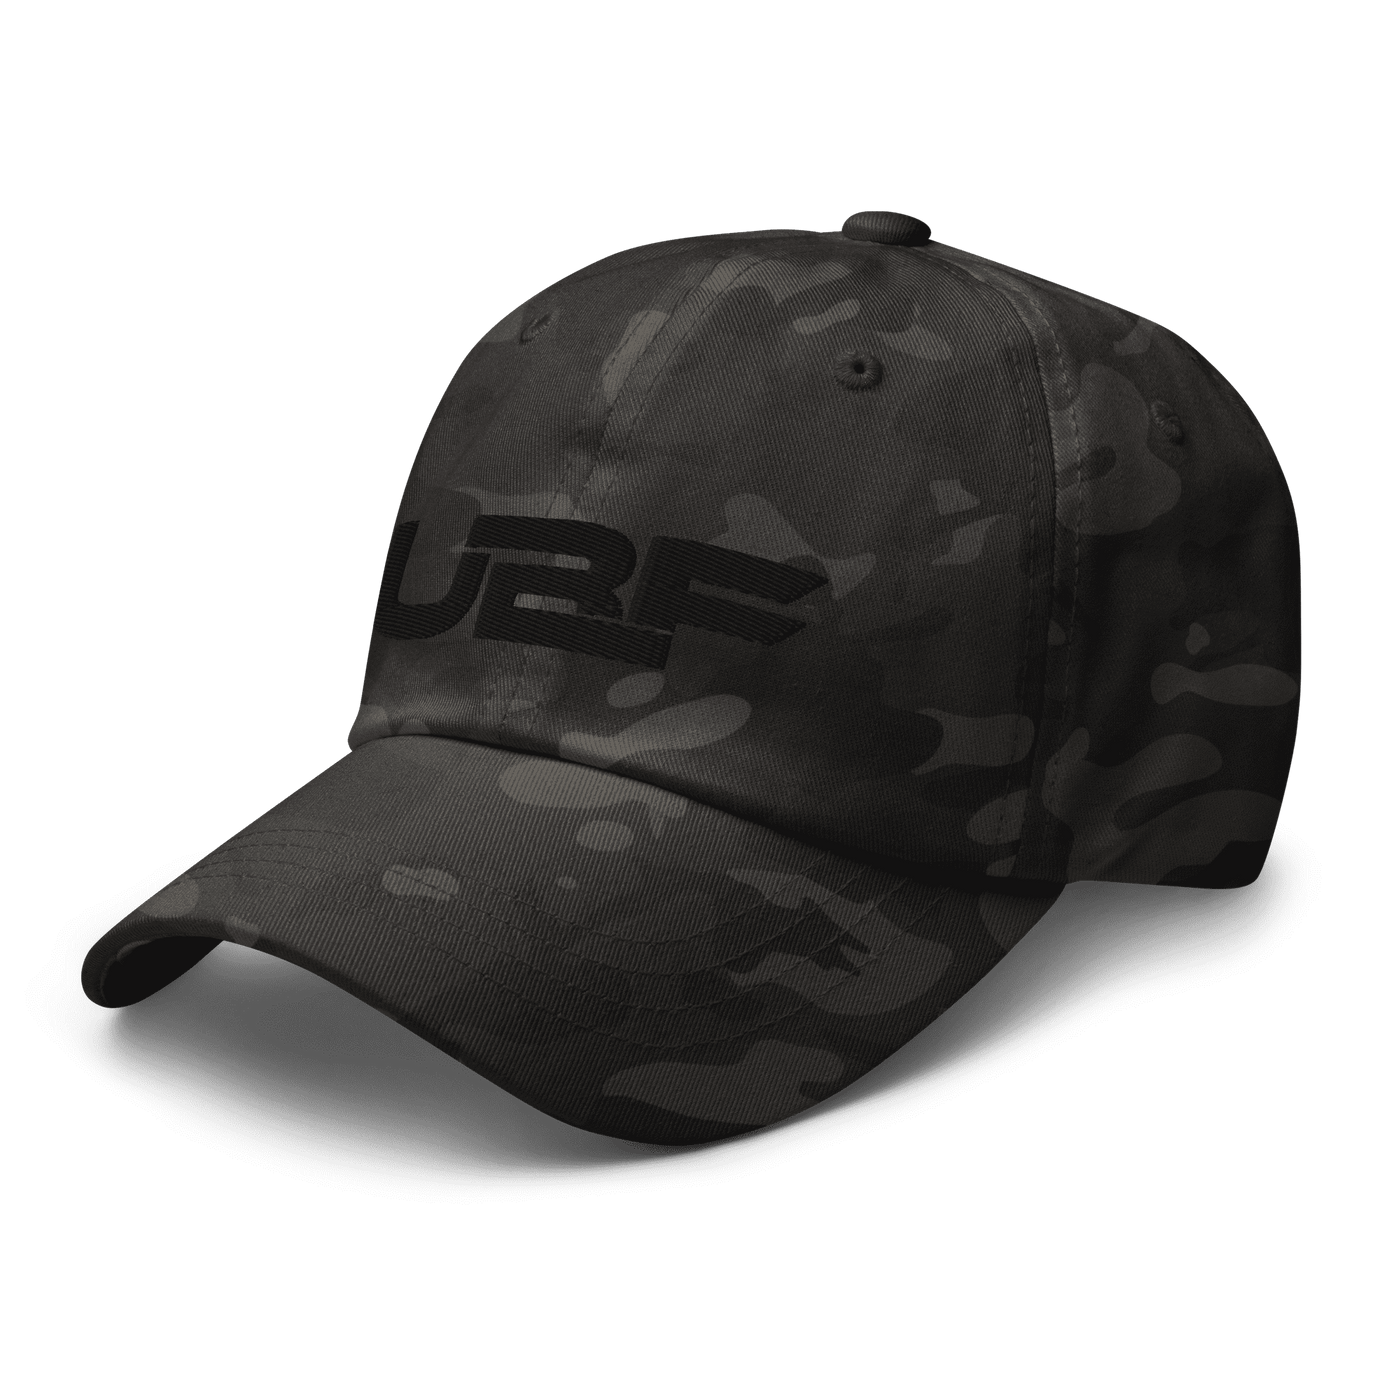 Black UBF Multicam dad hat